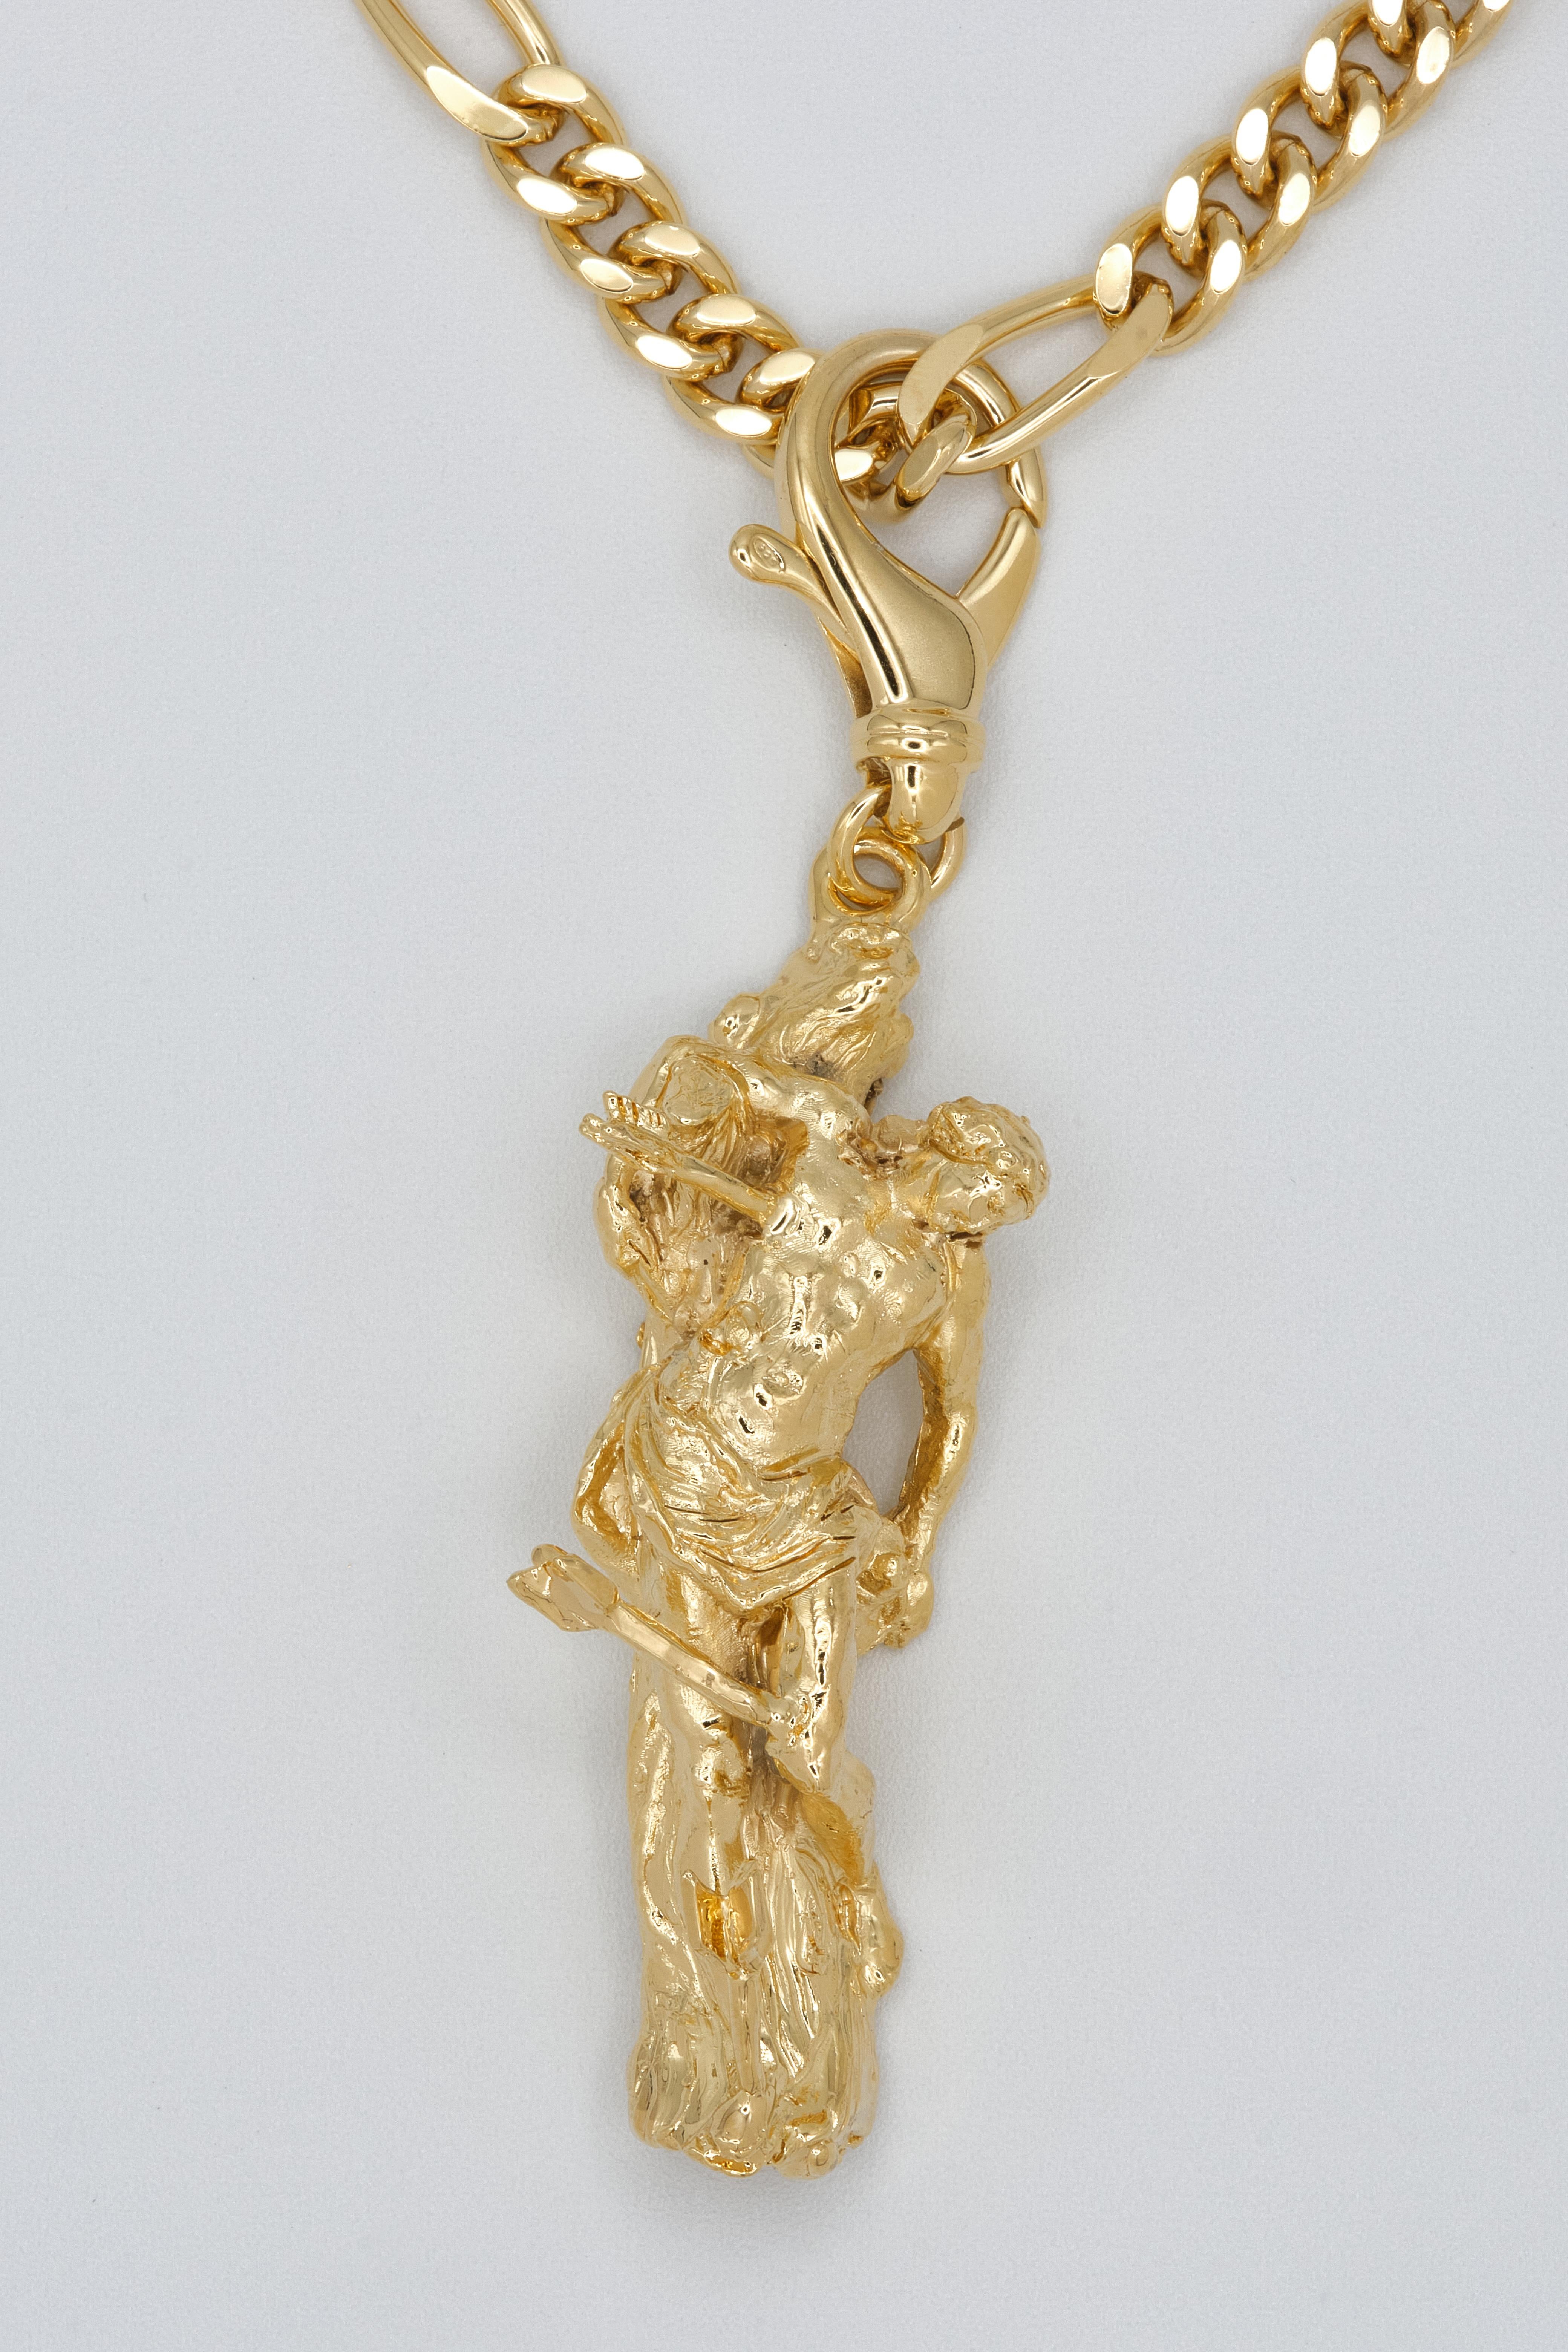 st sebastian gold pendant